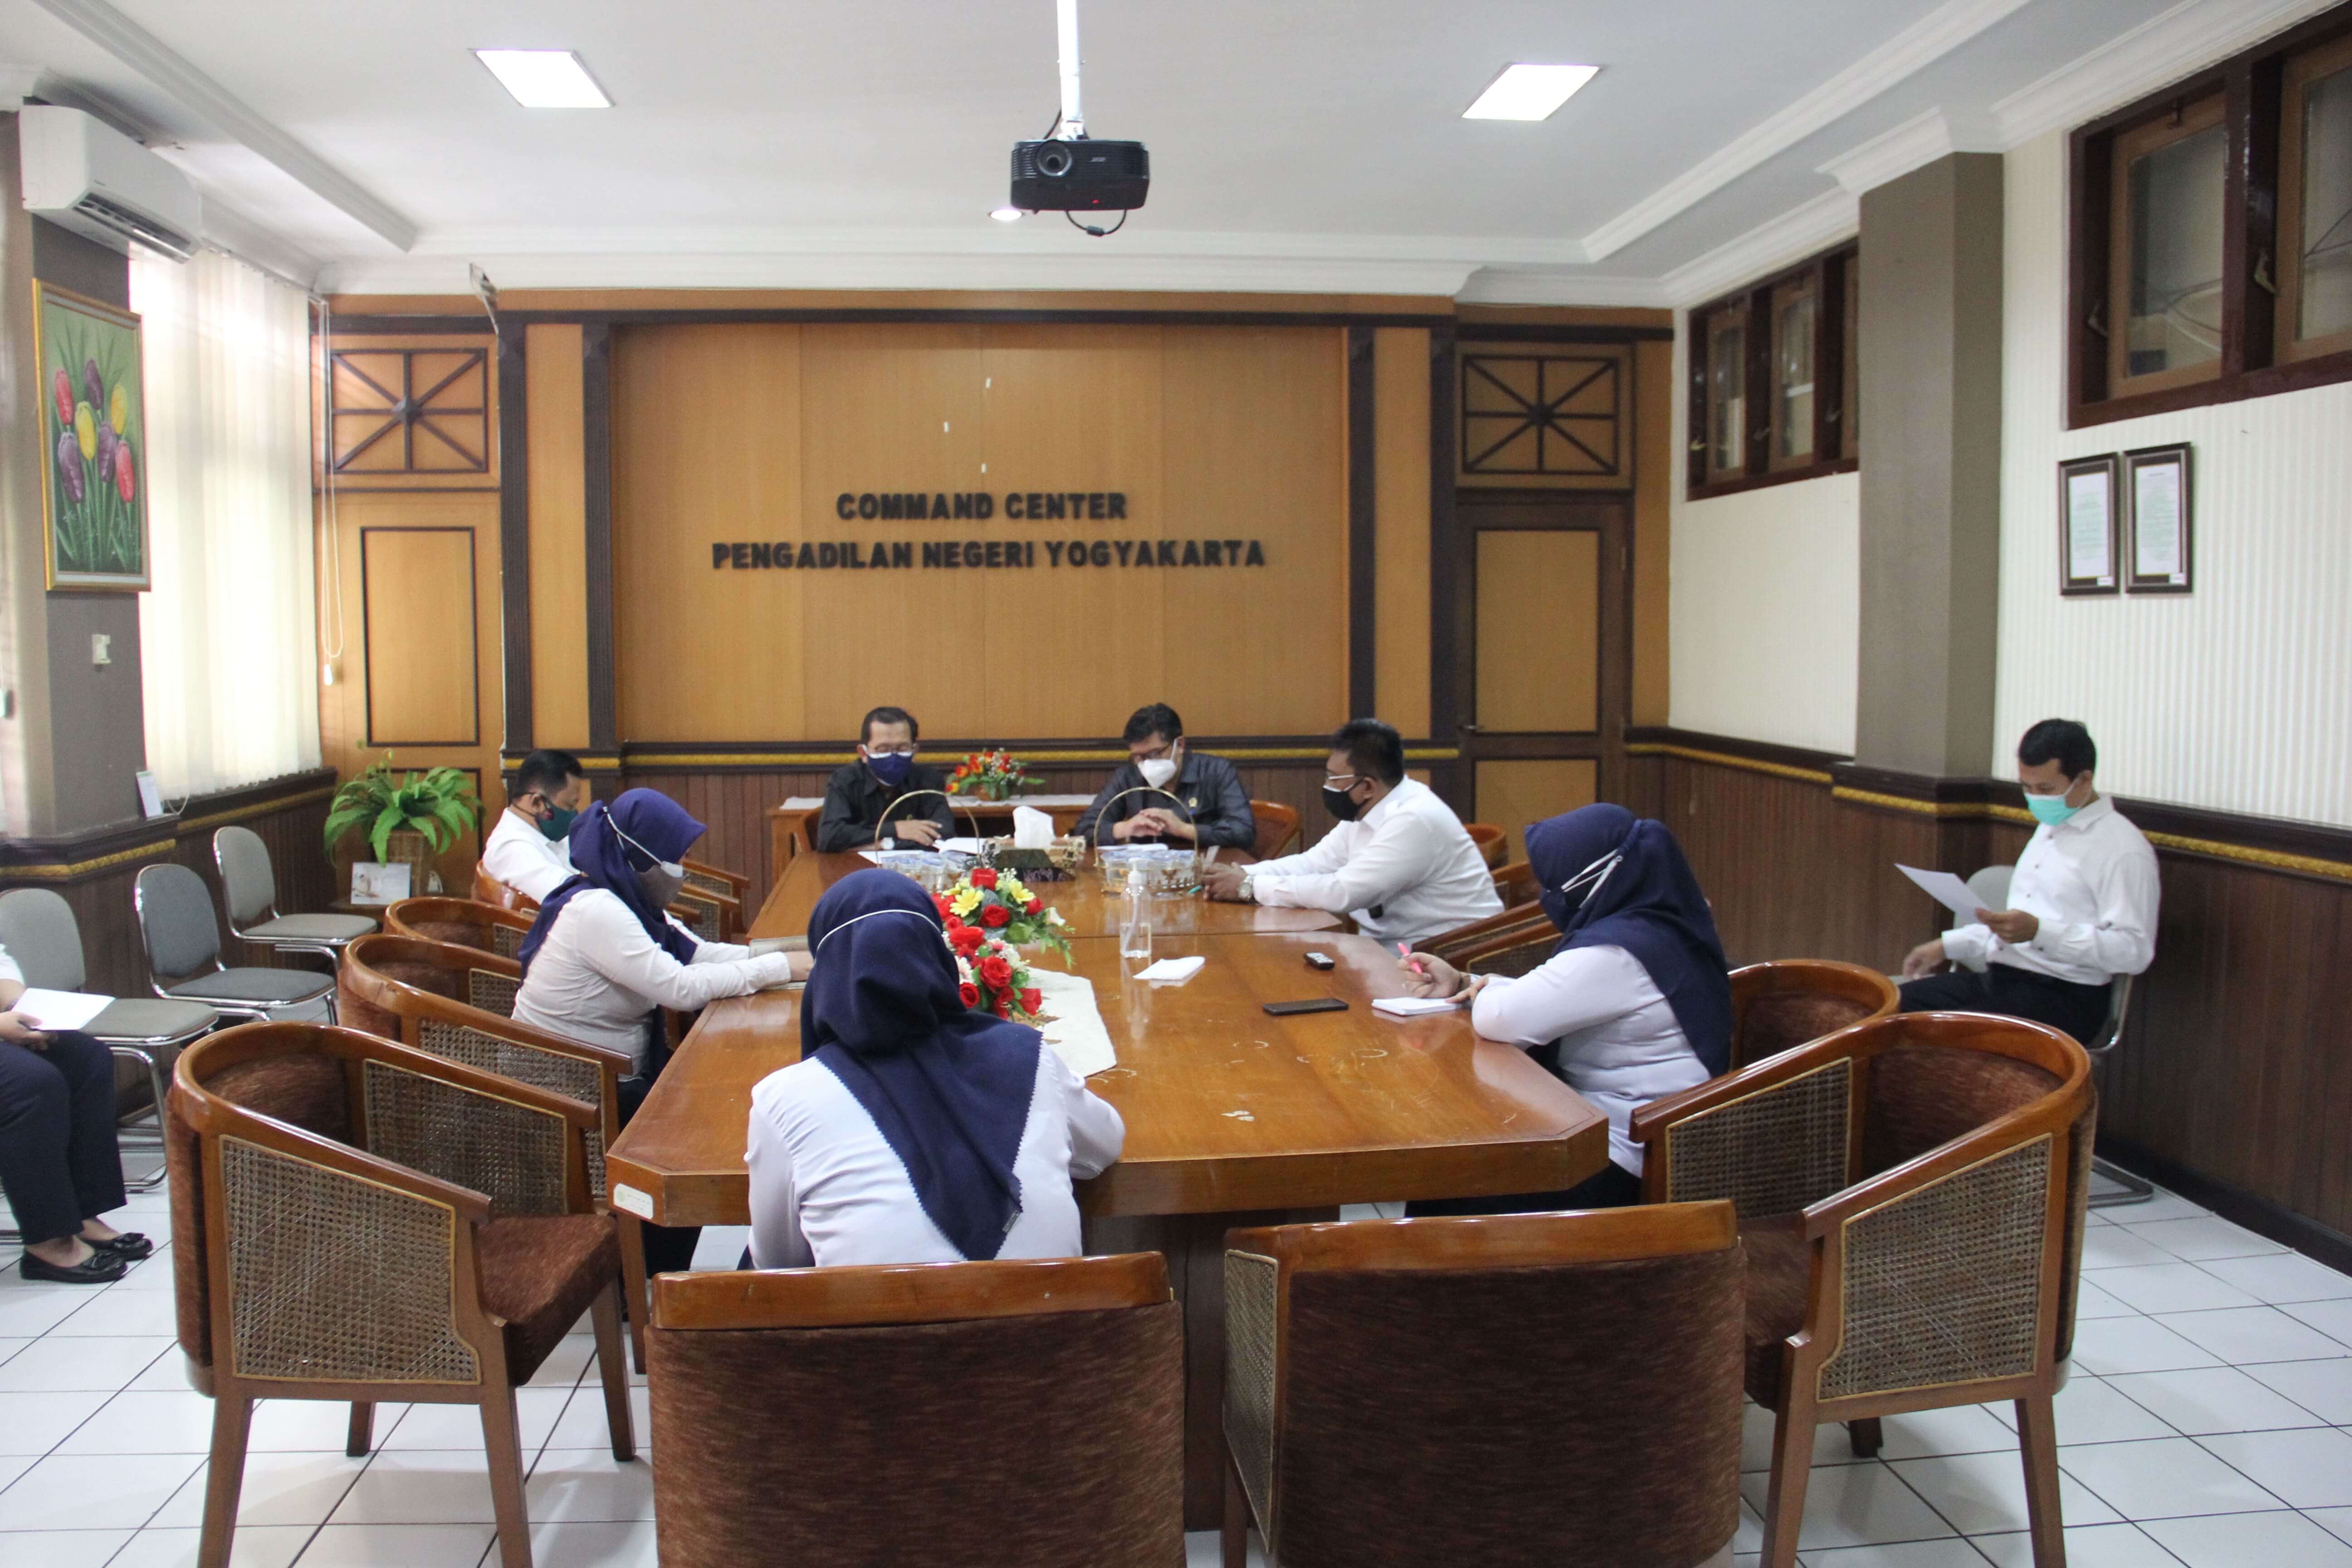 Rapat Satgas Pencegahan Penyebaran Covid-19 Pengadilan Negeri Yogyakarta